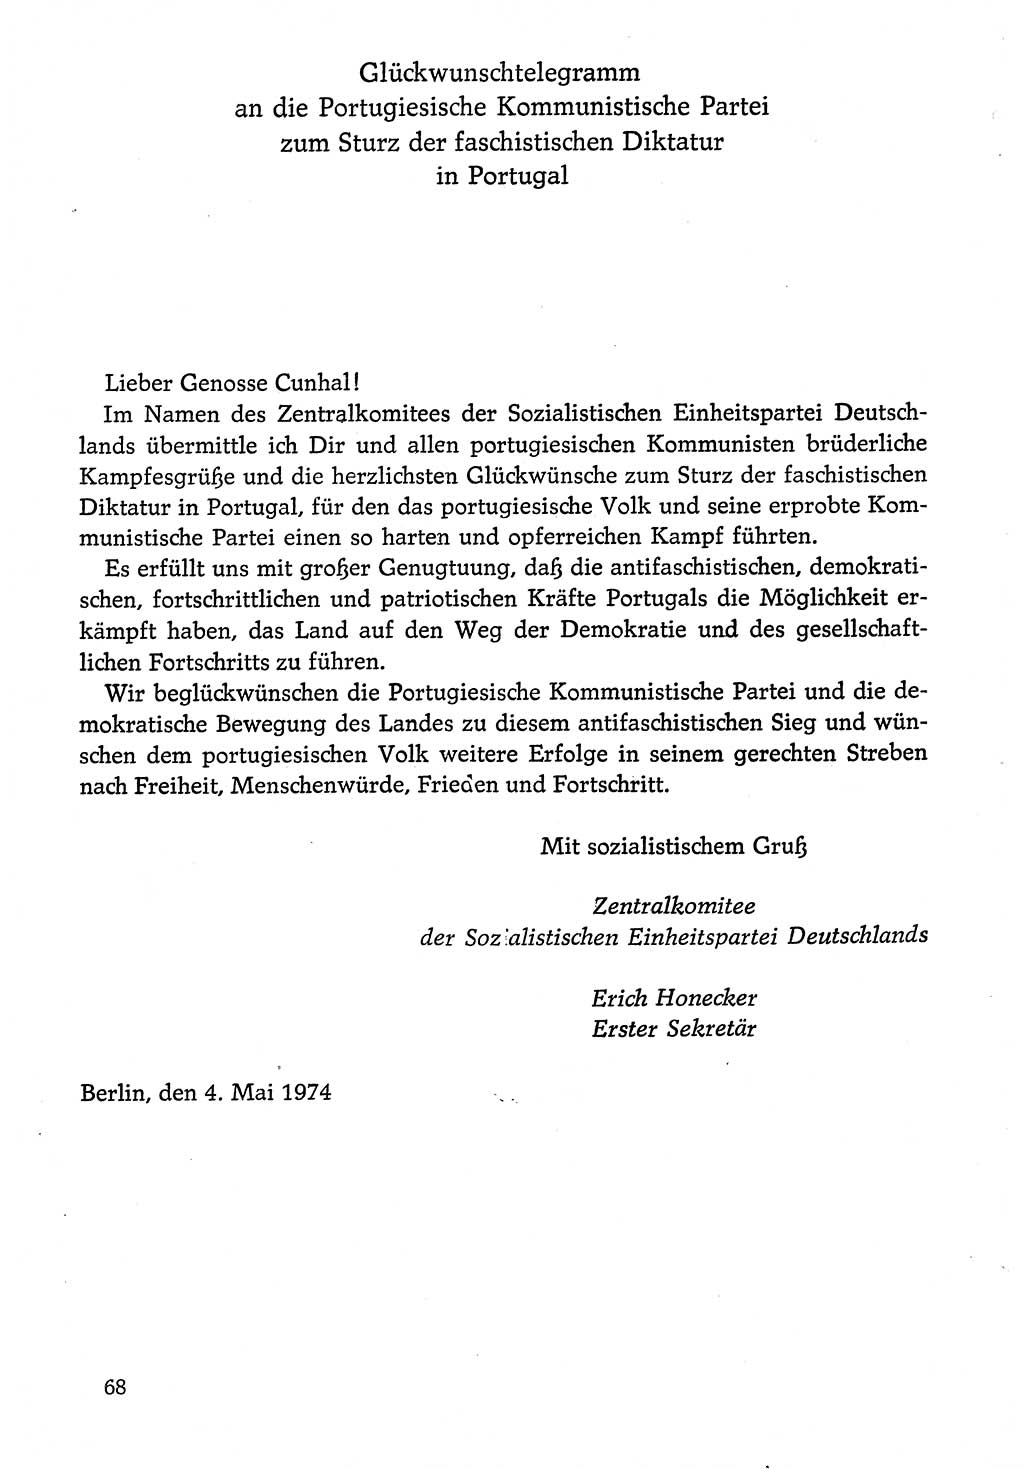 Dokumente der Sozialistischen Einheitspartei Deutschlands (SED) [Deutsche Demokratische Republik (DDR)] 1974-1975, Seite 68 (Dok. SED DDR 1978, Bd. ⅩⅤ, S. 68)